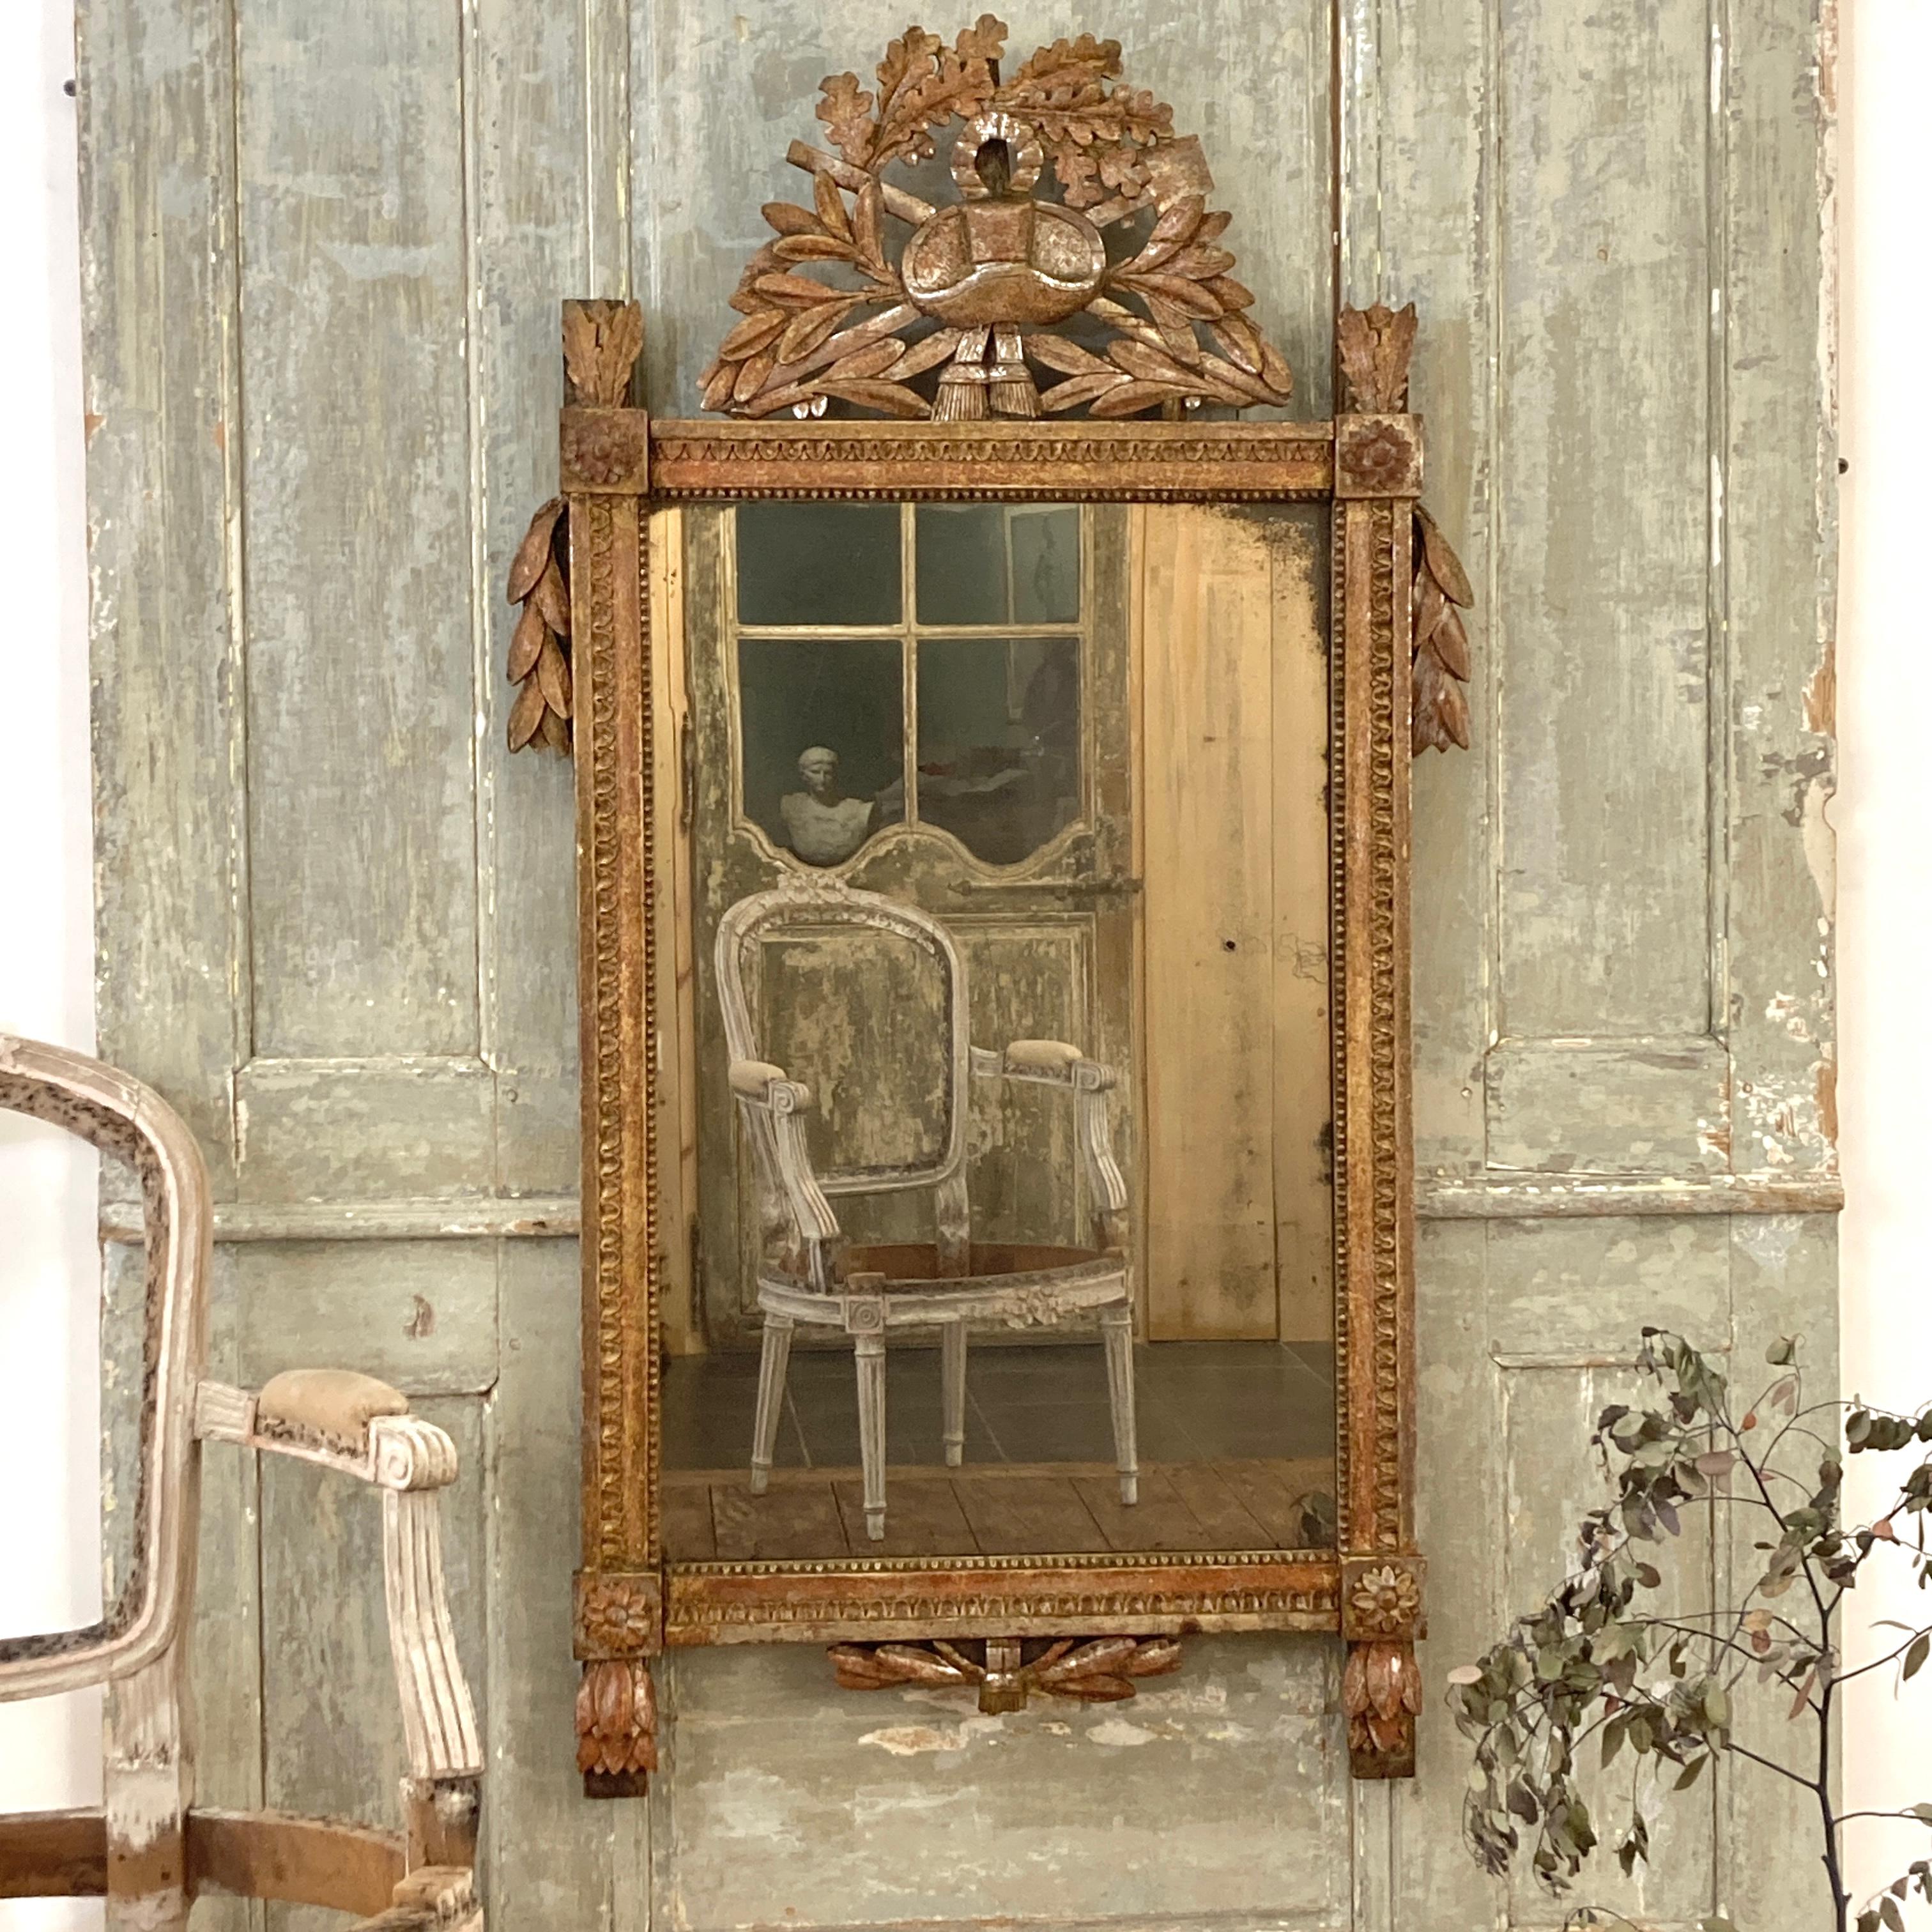 Miroir en bois doré d'époque Louis XVI, vers 1790, avec une crête sculptée représentant un thème de jardinage. Ce miroir en bois doré d'époque Louis XVI, datant d'environ 1790, est un splendide objet qui allie l'élégance du bois doré à un charme